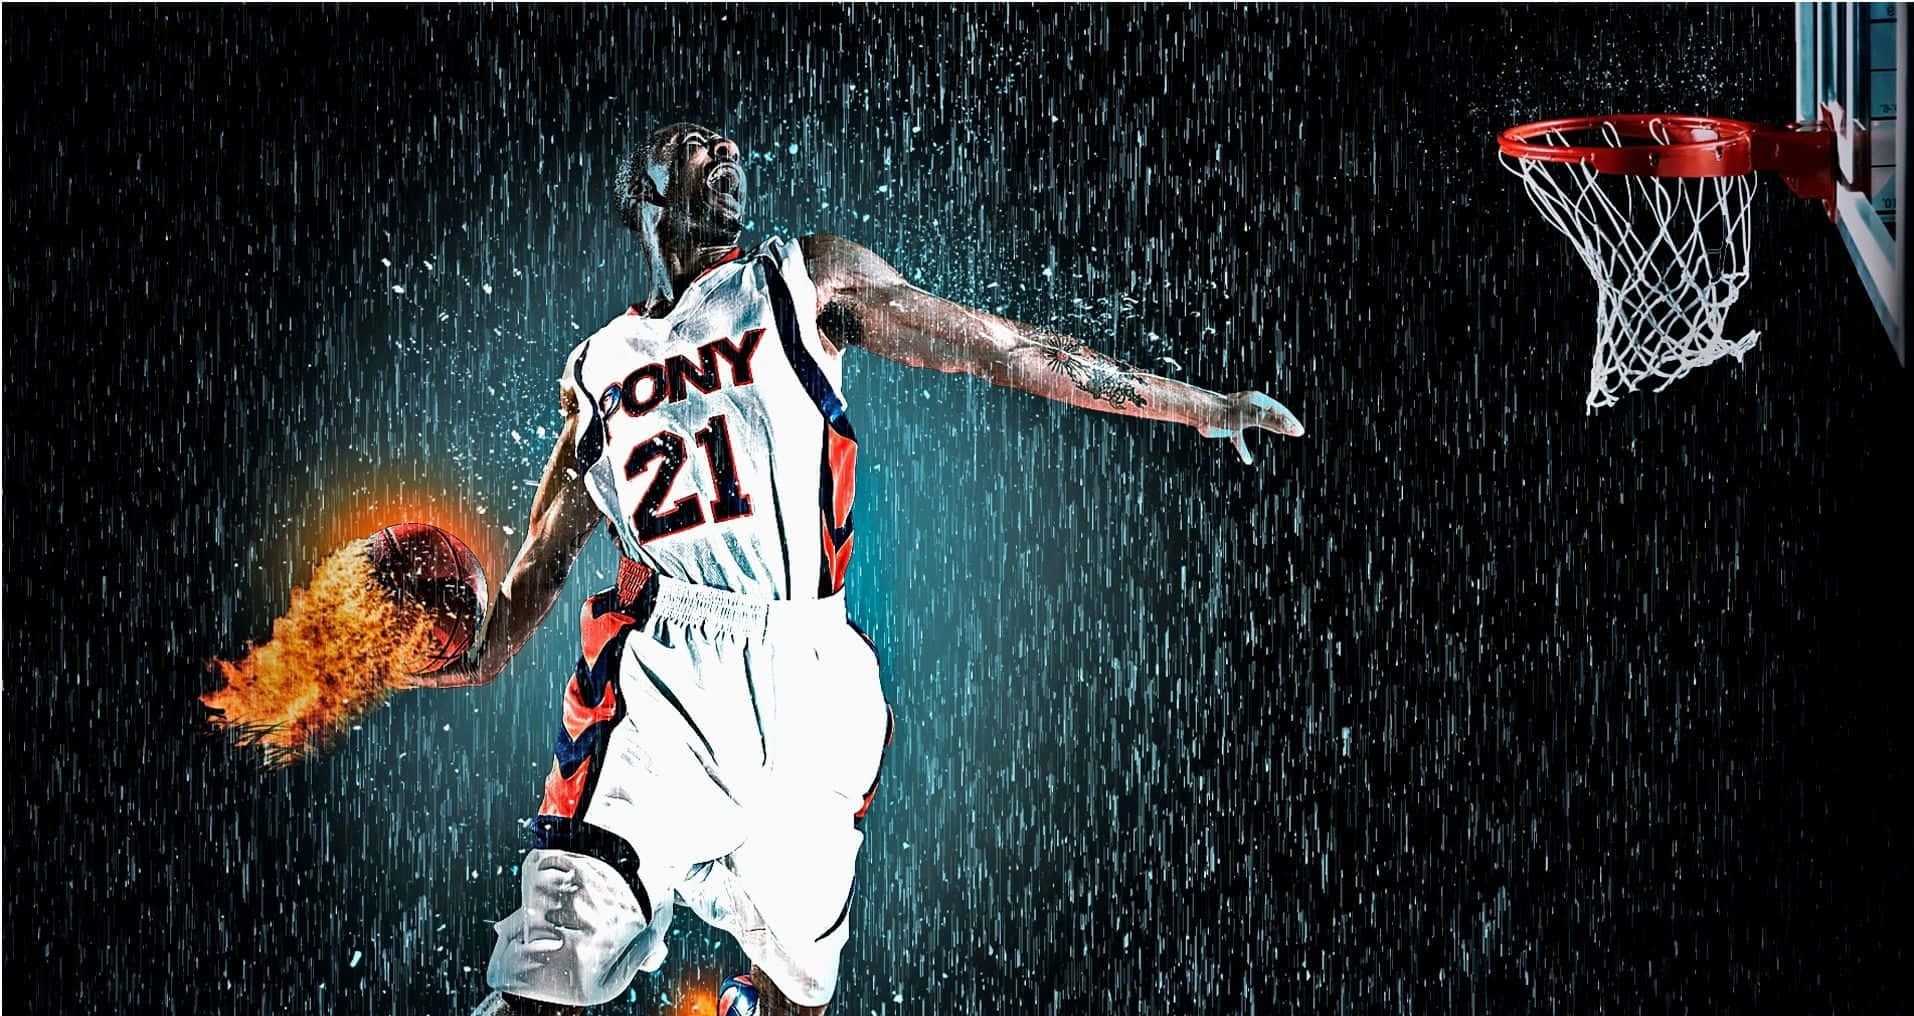 San Antonio Spurs NBA Champions Digital Art by Steven Parker - Pixels